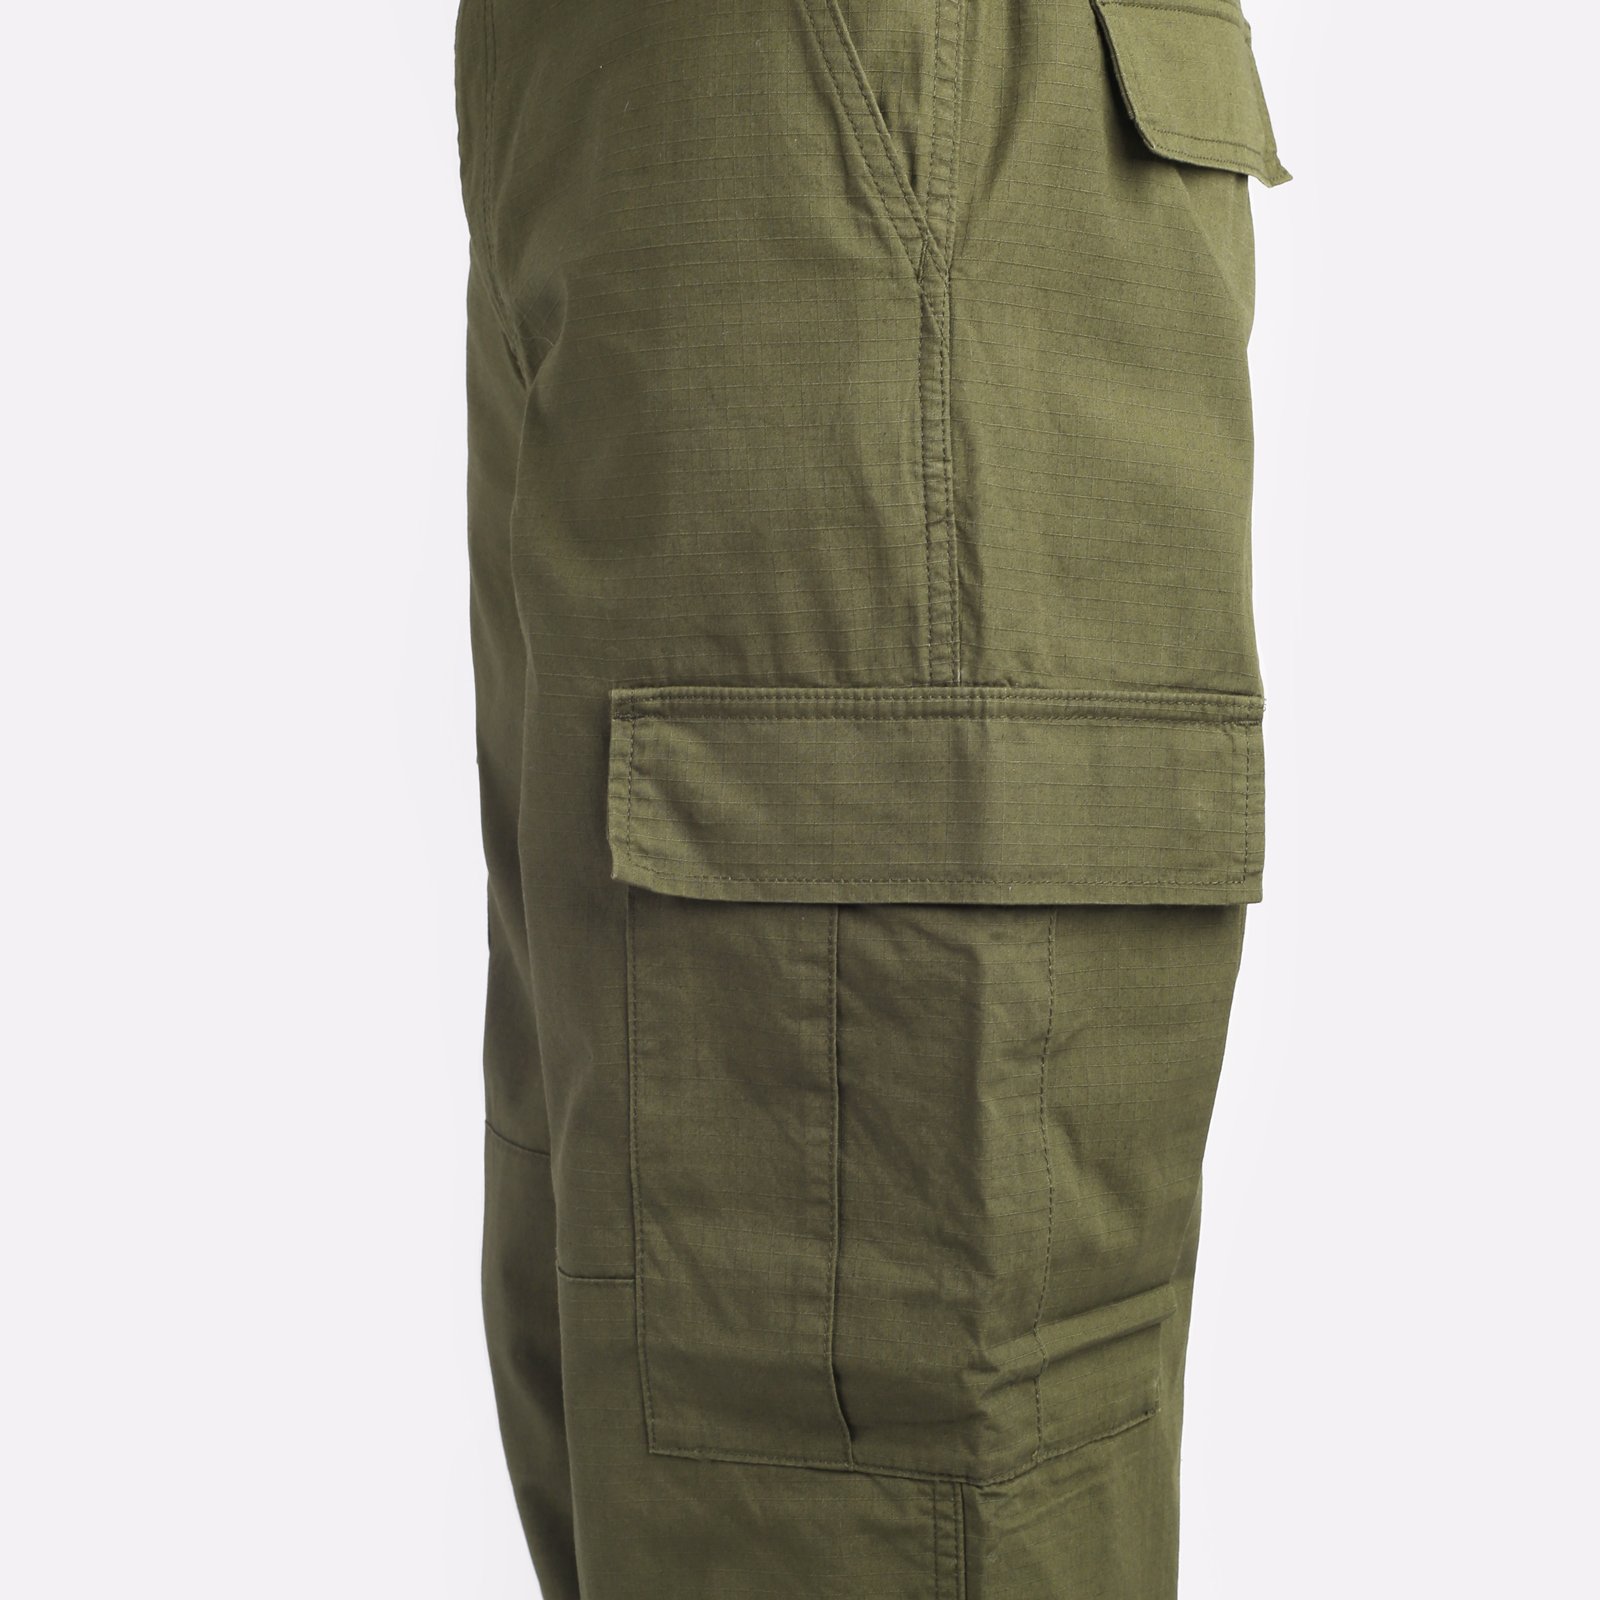 мужские брюки Carhartt WIP Regular Cargo Pant  (I032467-cypress)  - цена, описание, фото 4